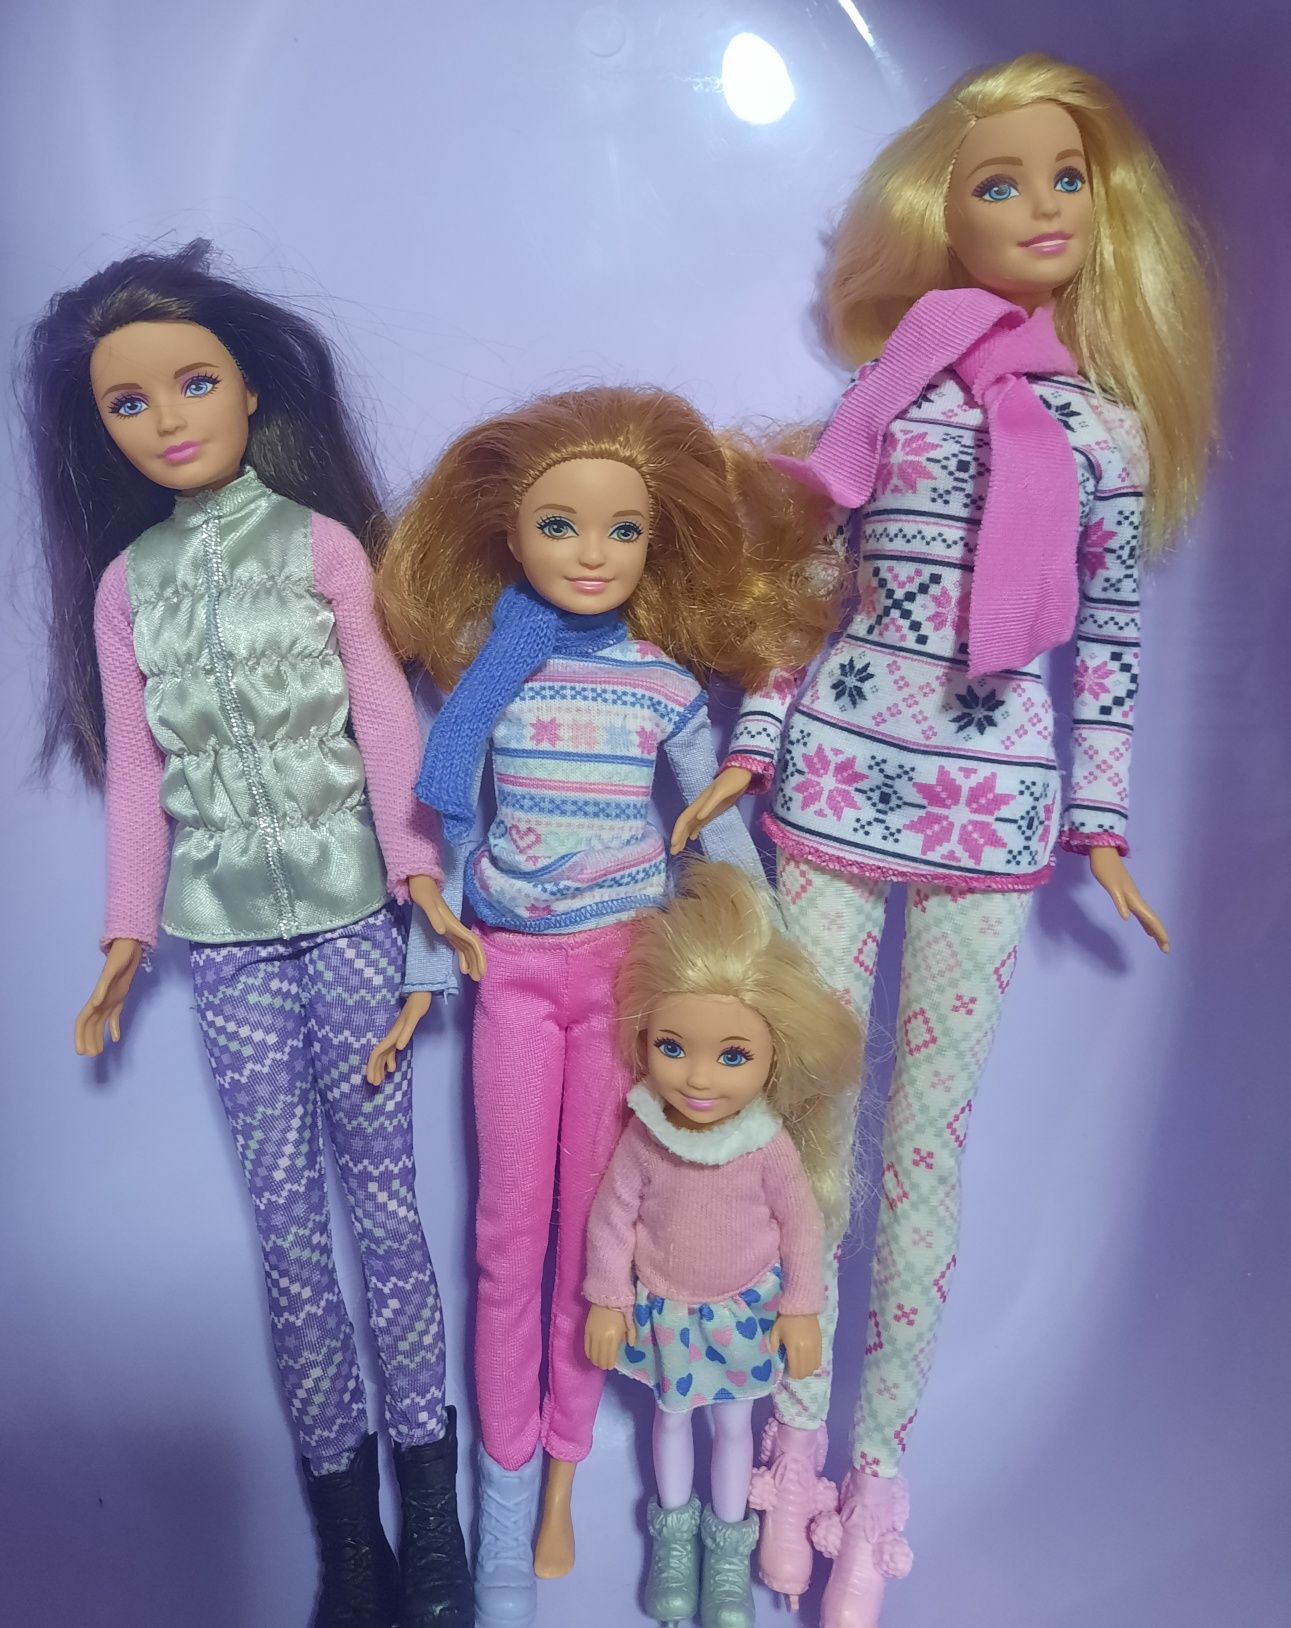 Кукла Барби сёстрами. Полная семья 4 сестёр. США ОРИГИНАЛ.